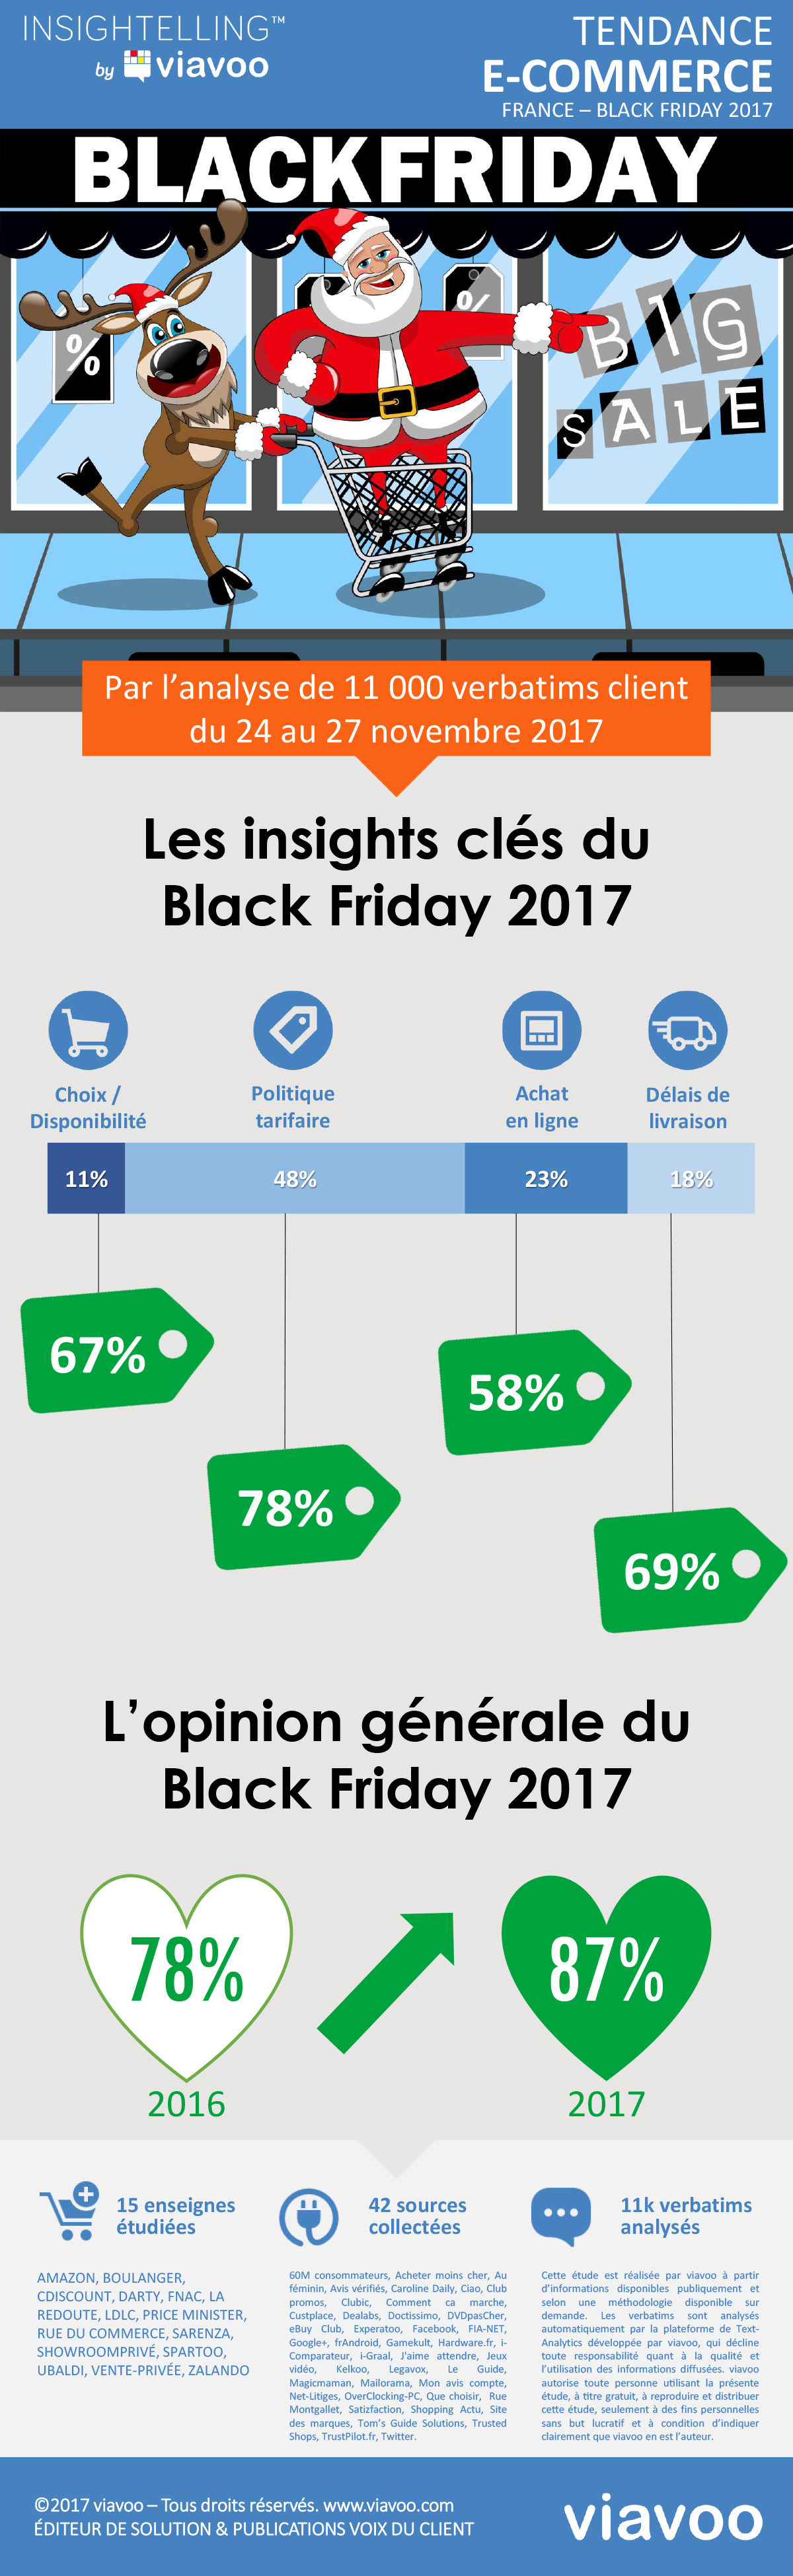 Insights client du Black Friday 2017